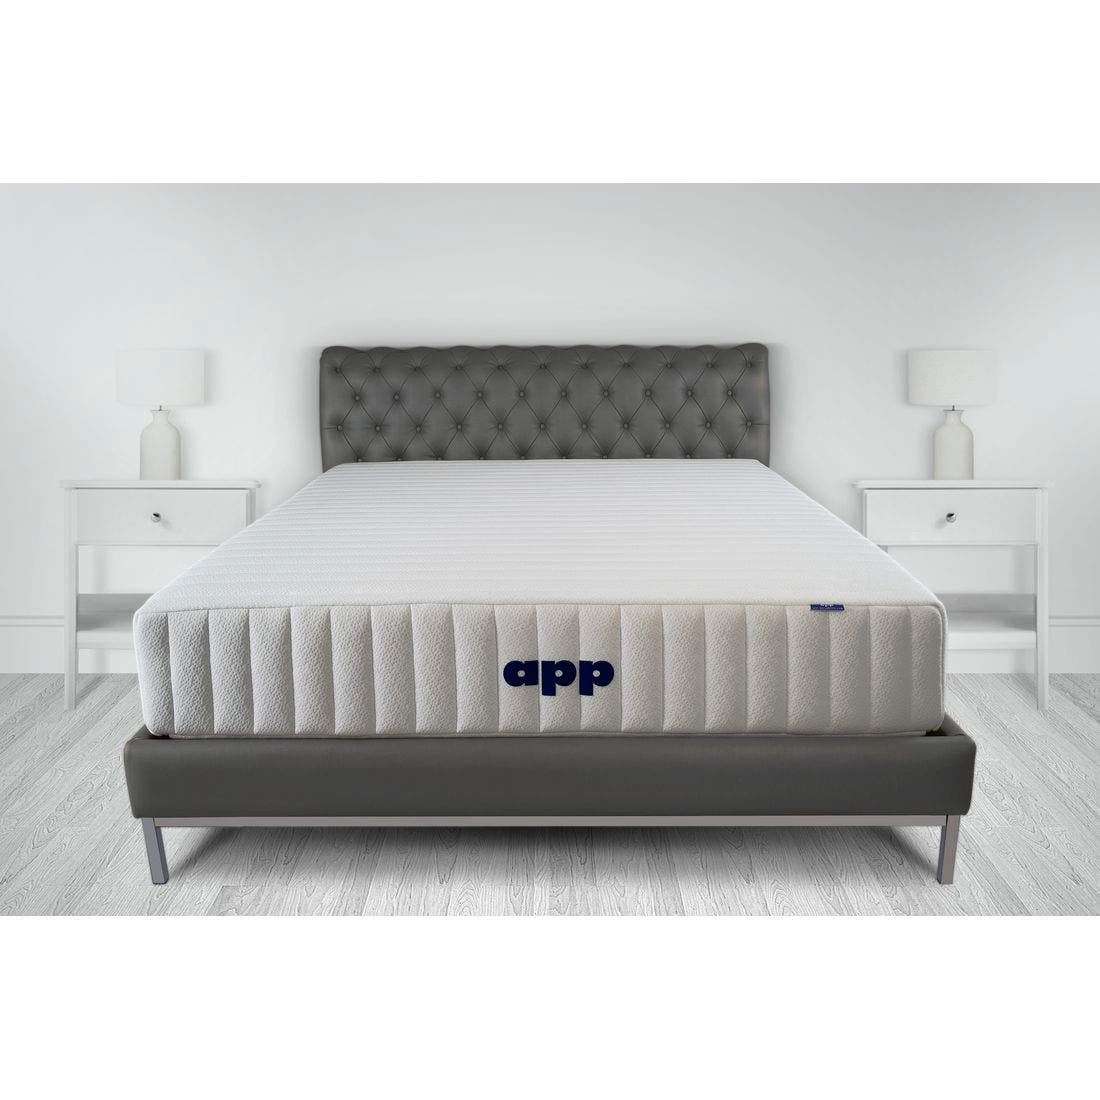 39015037-mattress-bedding-mattresses-pocket-spring-mattress-31